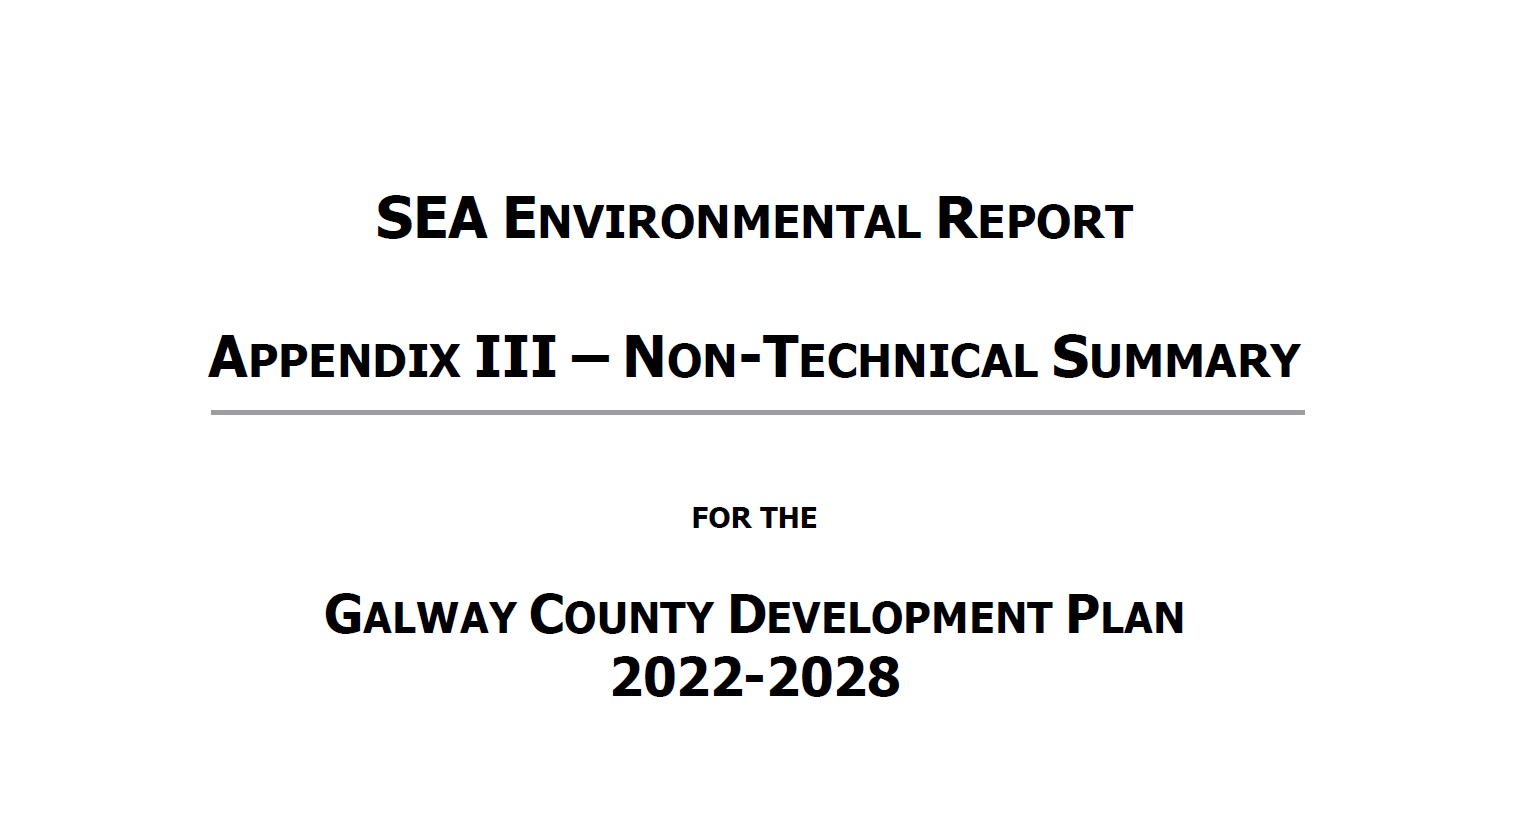 SEA Appendix 3 NTS cover